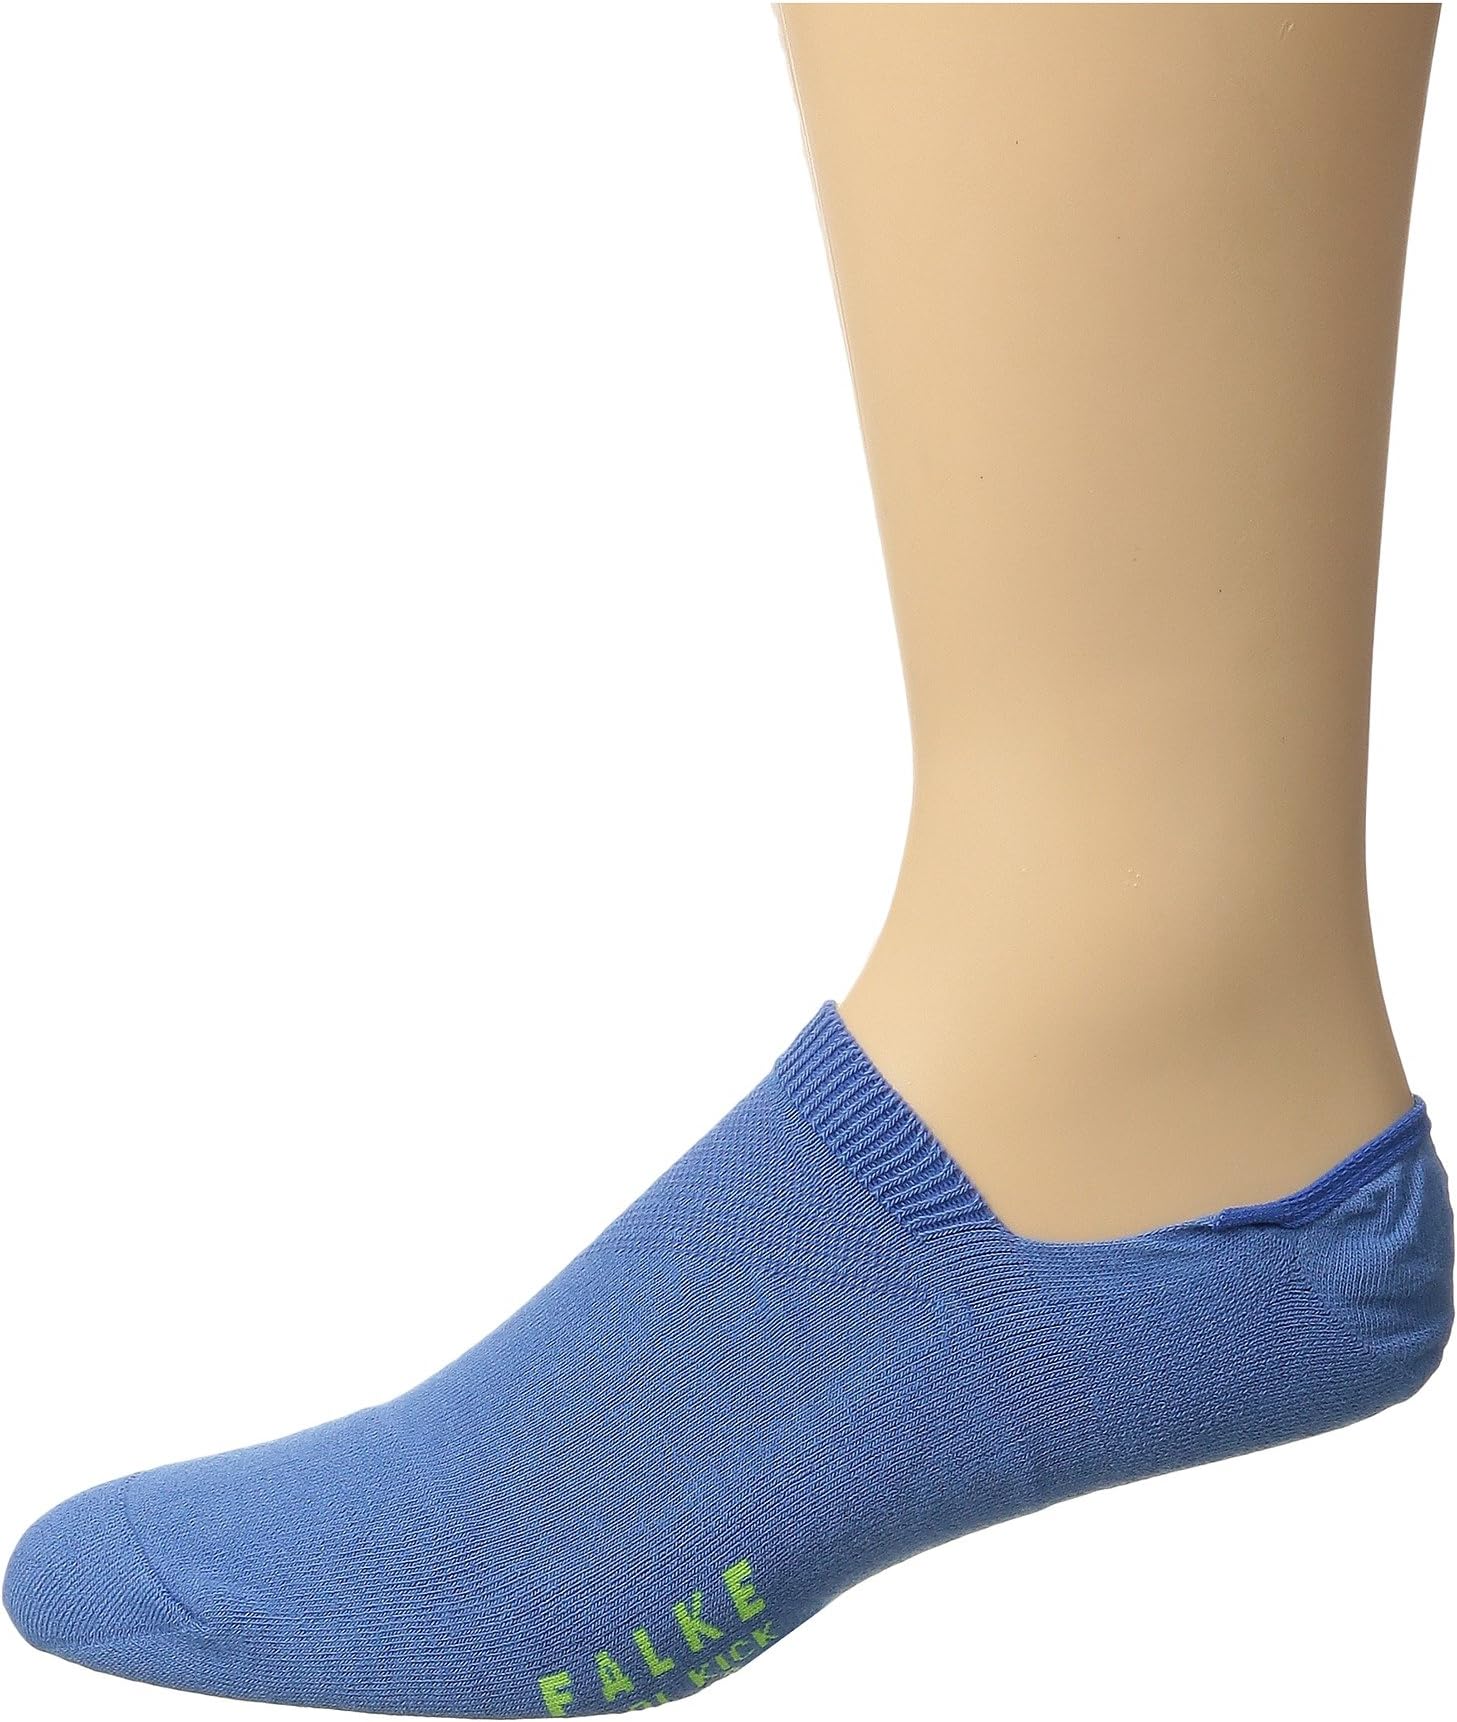 Носки-невидимки Cool Kick Falke, цвет Ribbon Blue носки кроссовки cool kick falke цвет ribbon blue